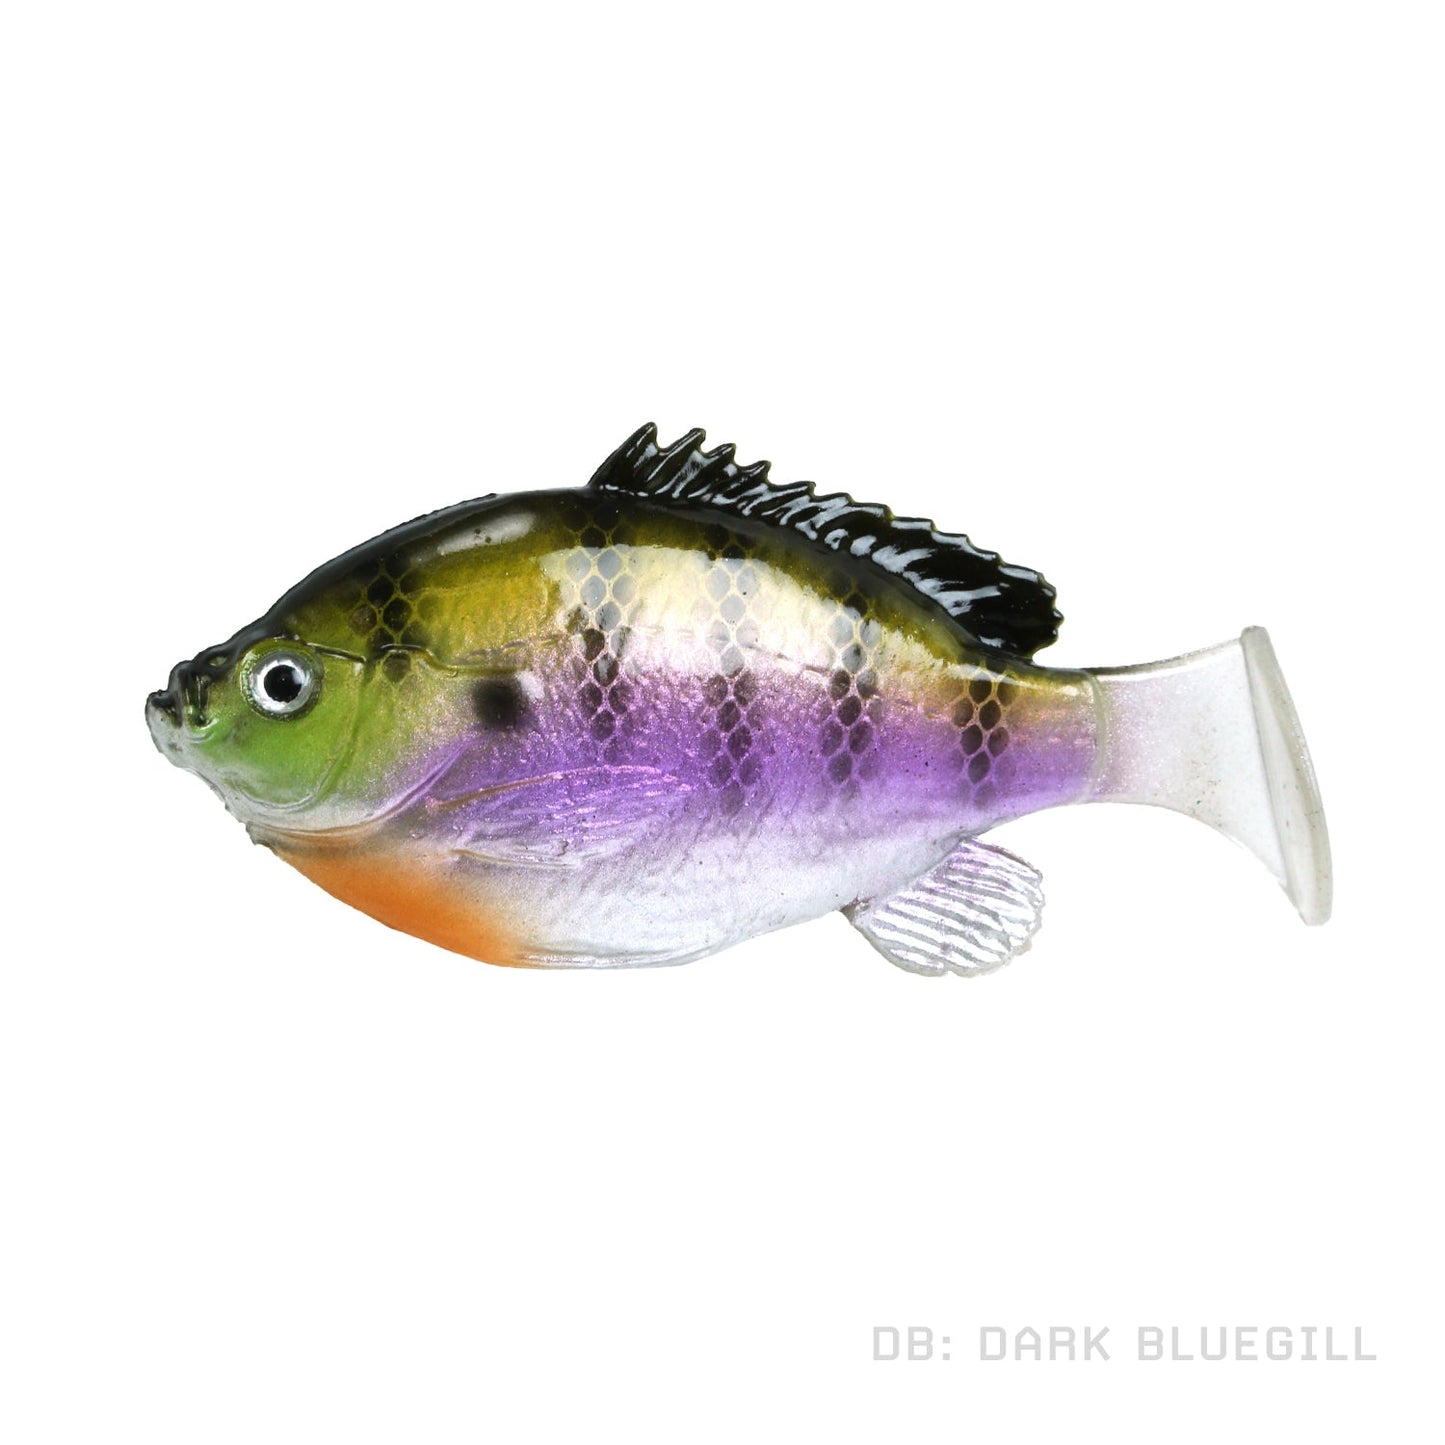 Fishlab Bio-Gill Swimbait